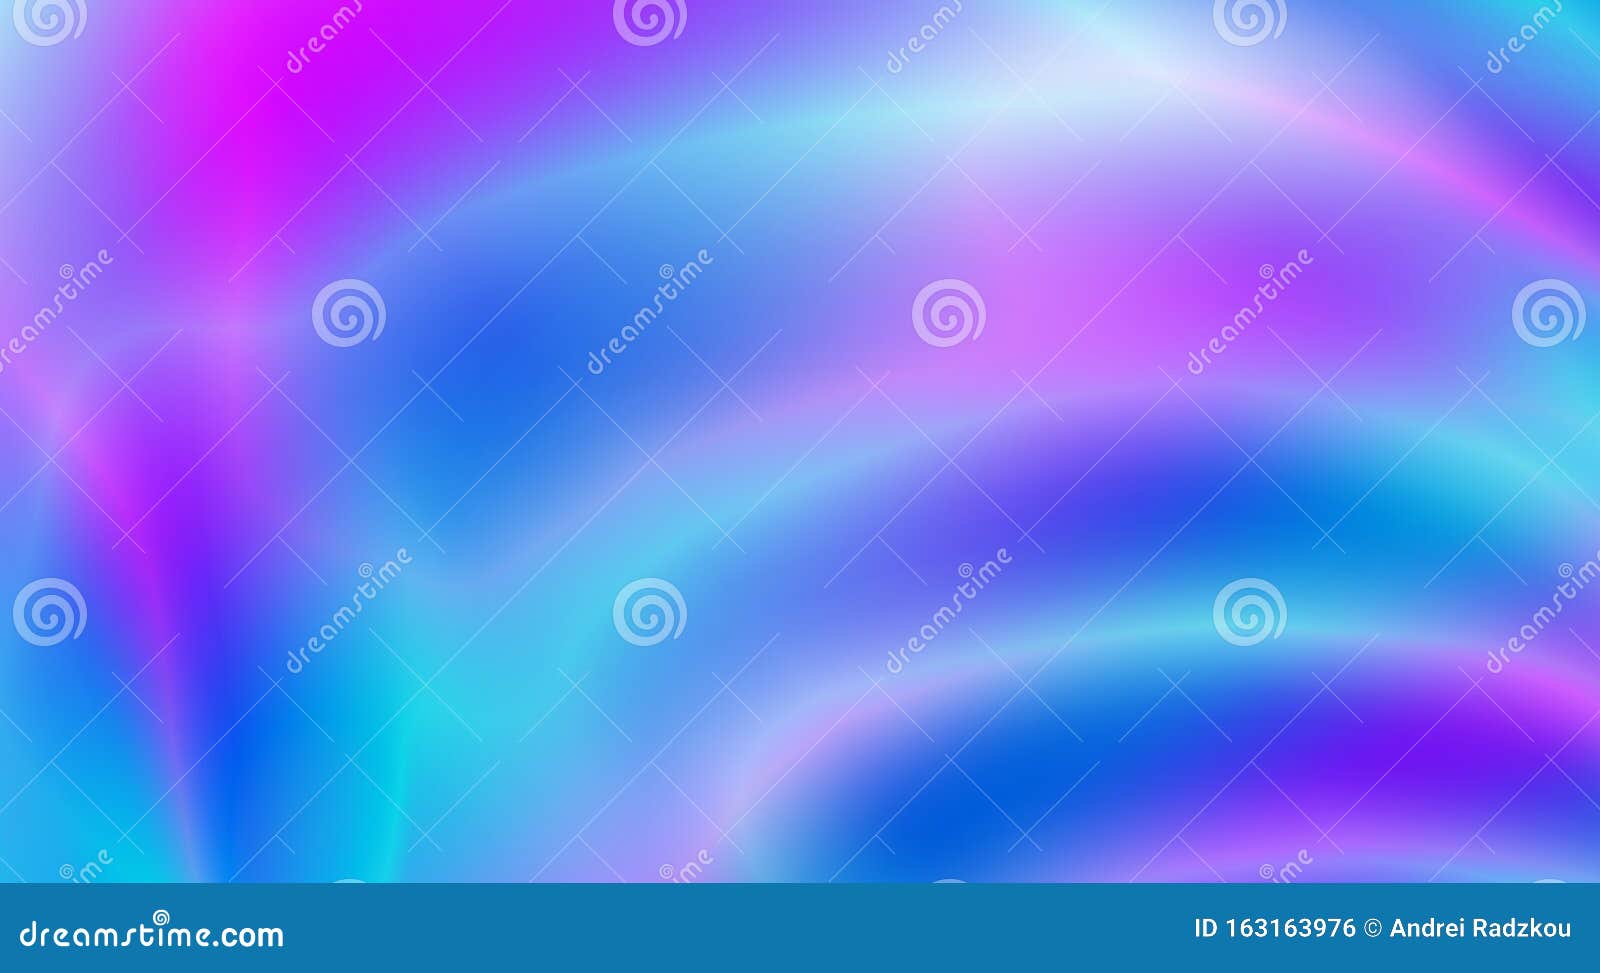 霓虹渐变抽象紫蓝模糊背景矢量壁纸向量例证 插画包括有背包 蓝色 再生 光泽性 流体 发光